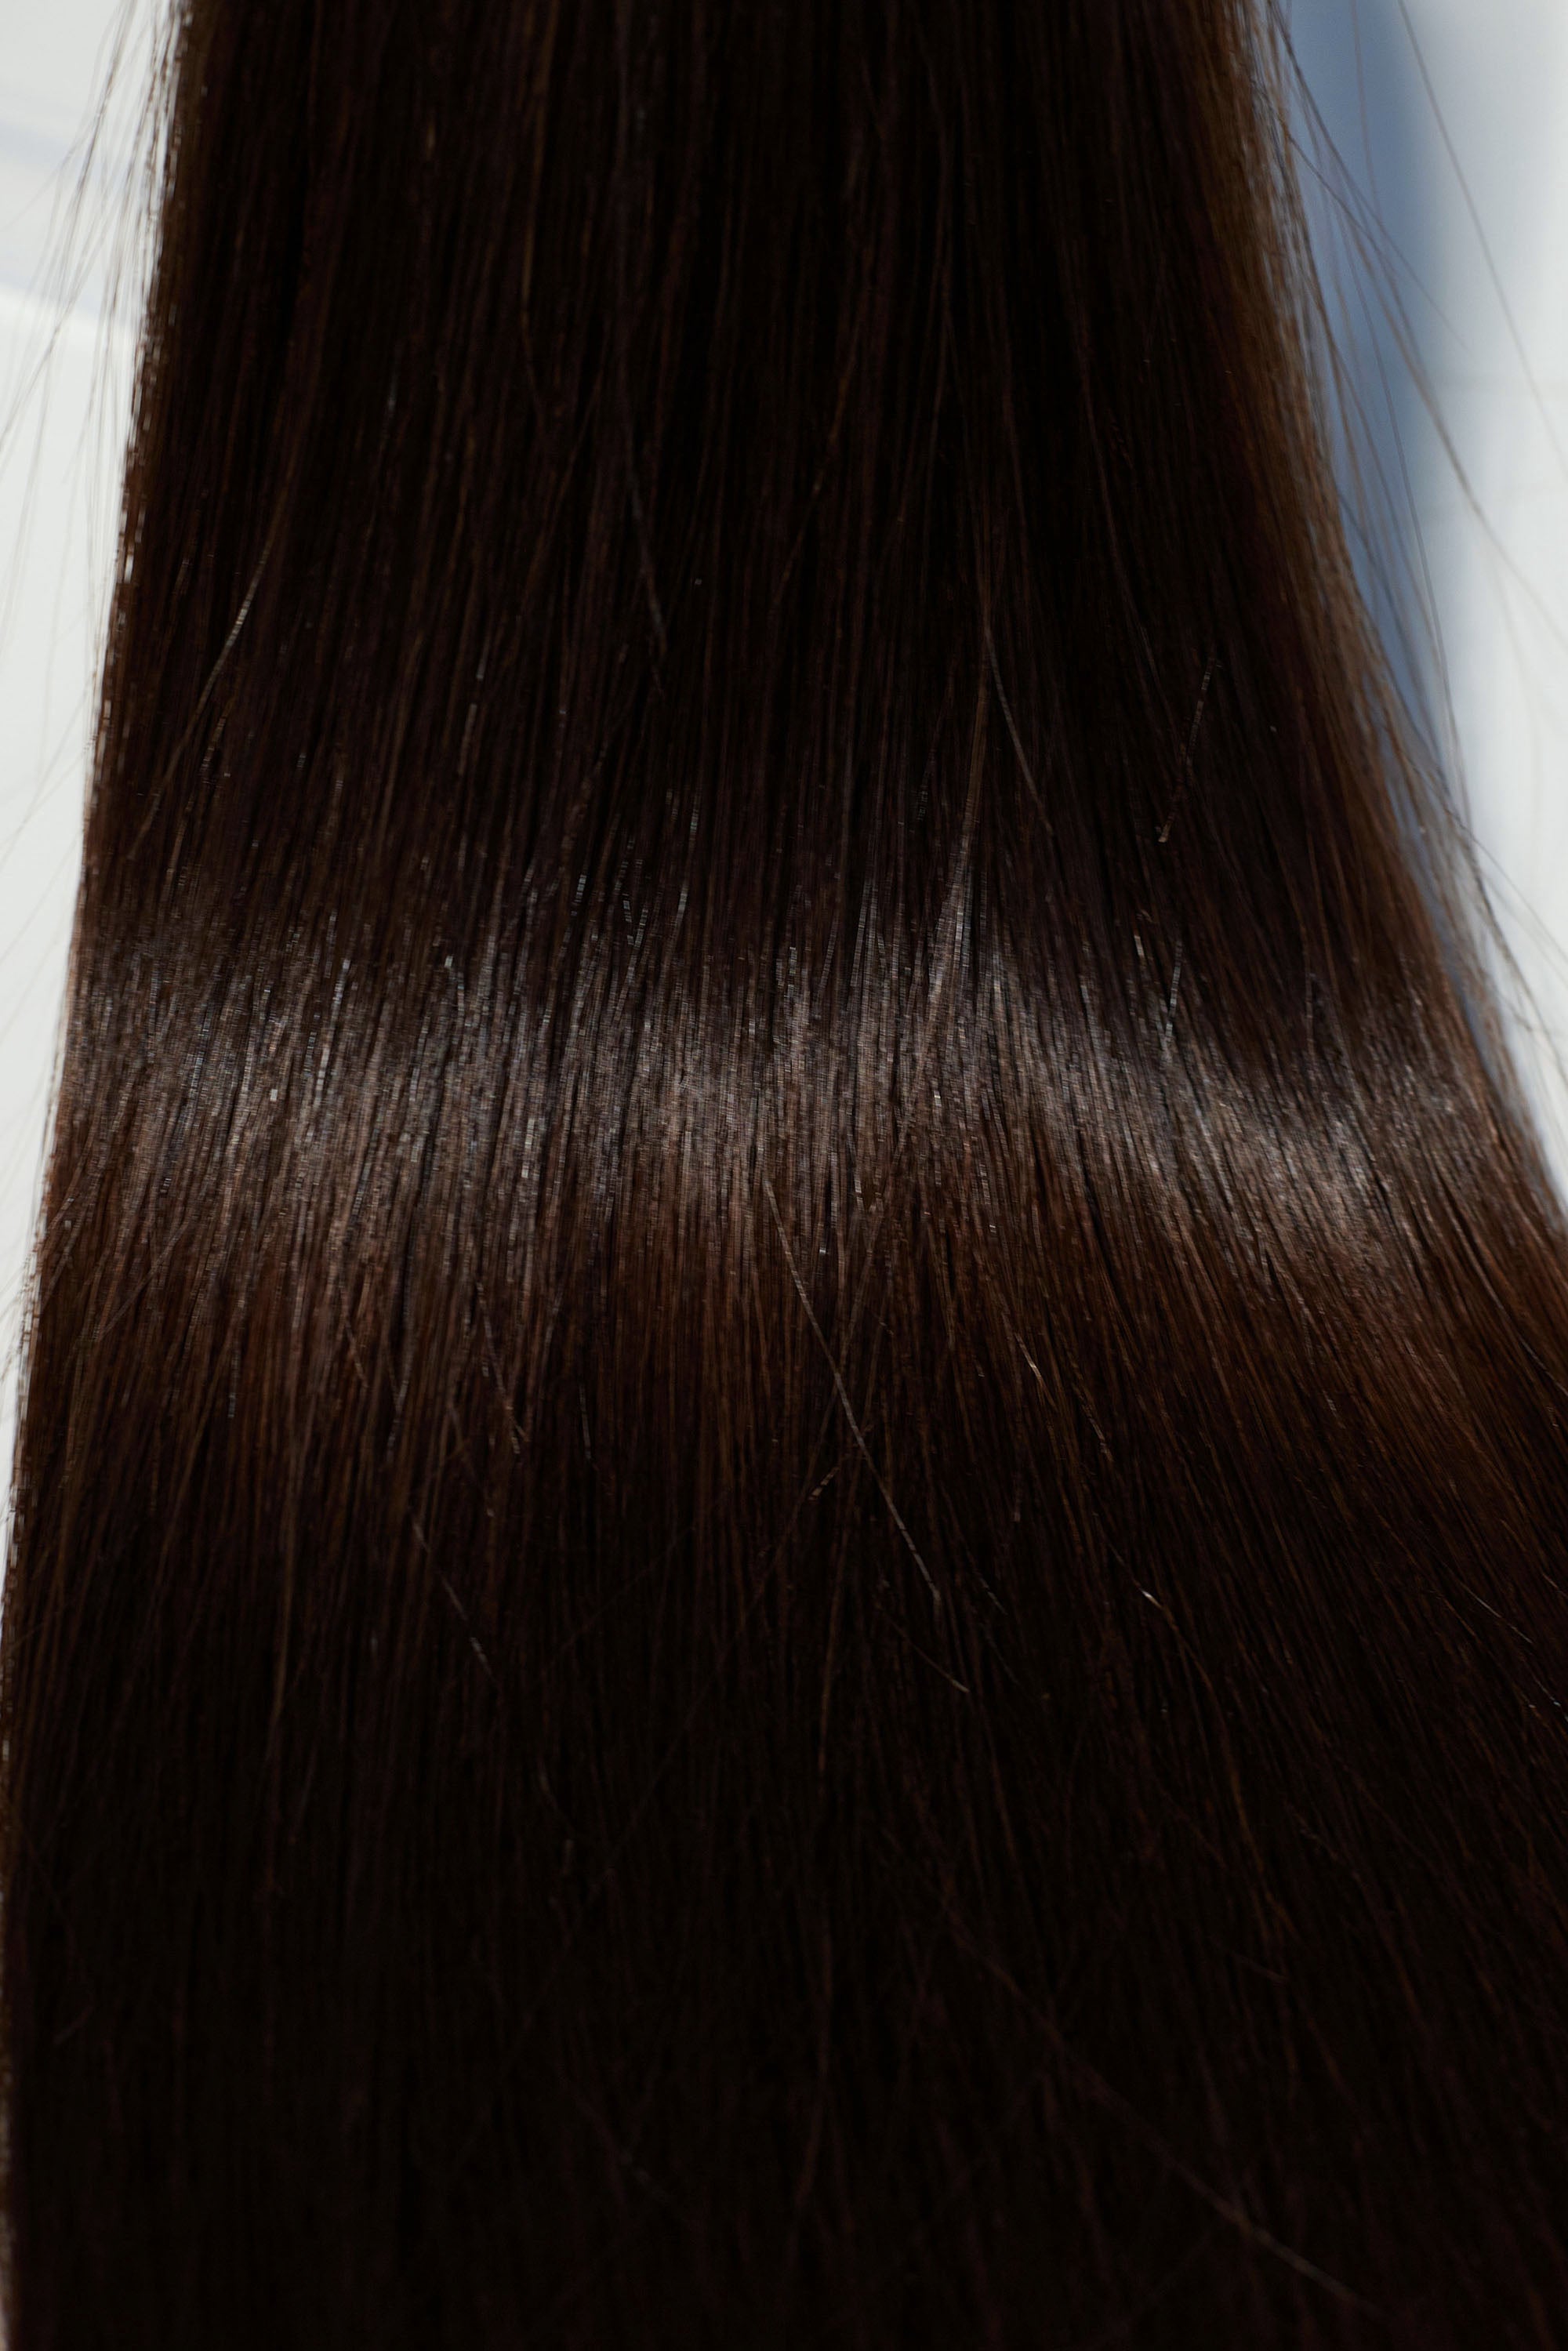 Behair professional Bulk hair "Premium" 16" (40cm) Natural Straight Dark Coffee Brown #2 - 25g hair extensions